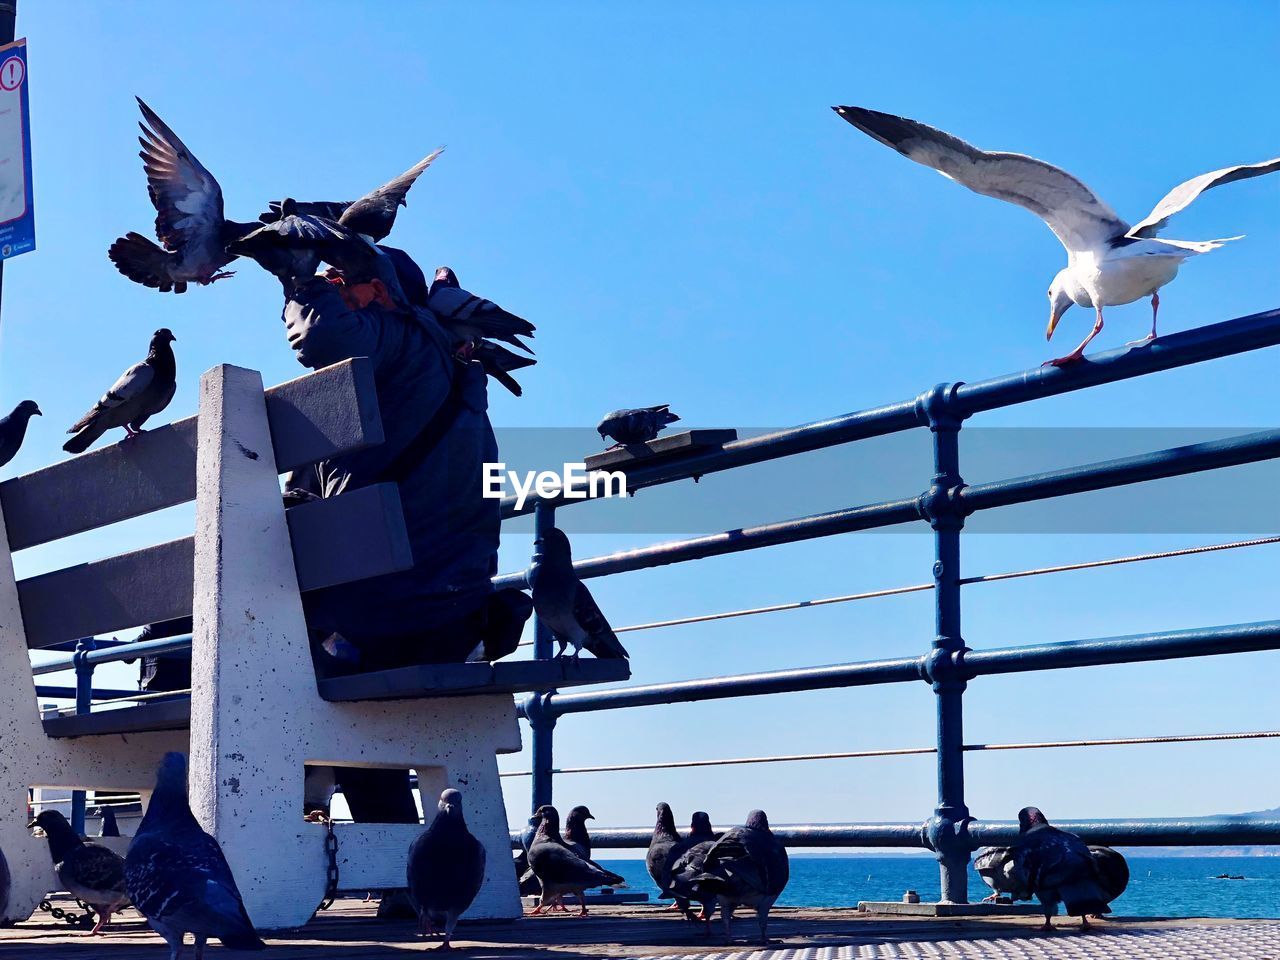 Birds on man at pier